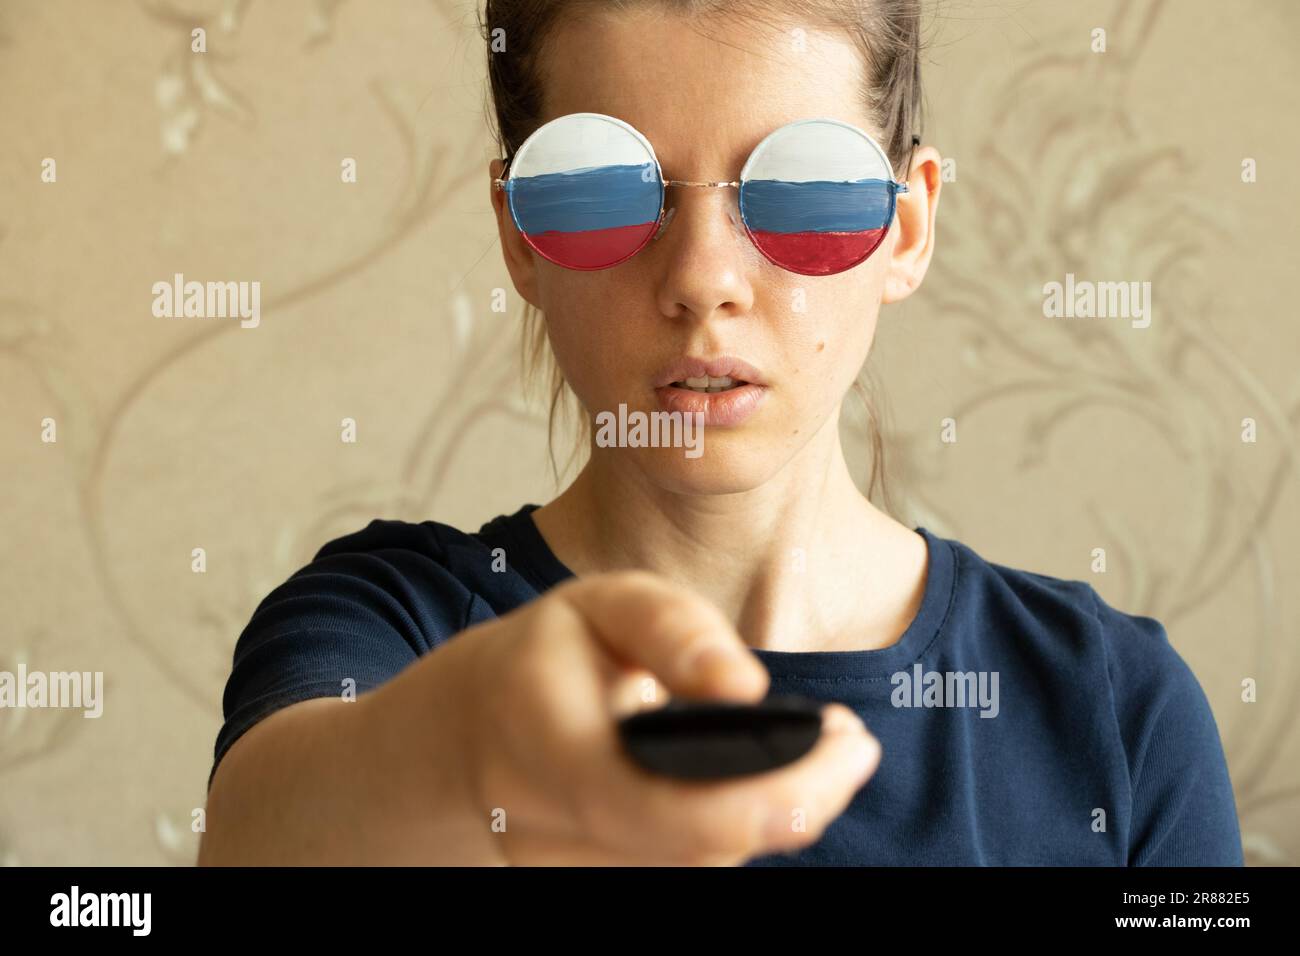 Die russische Flagge auf den Gläsern des Mädchens und in den Händen der Fernbedienung aus dem Fernsehen, Russland und Propaganda aus dem Fernsehen, Lügen und Täuschung Stockfoto